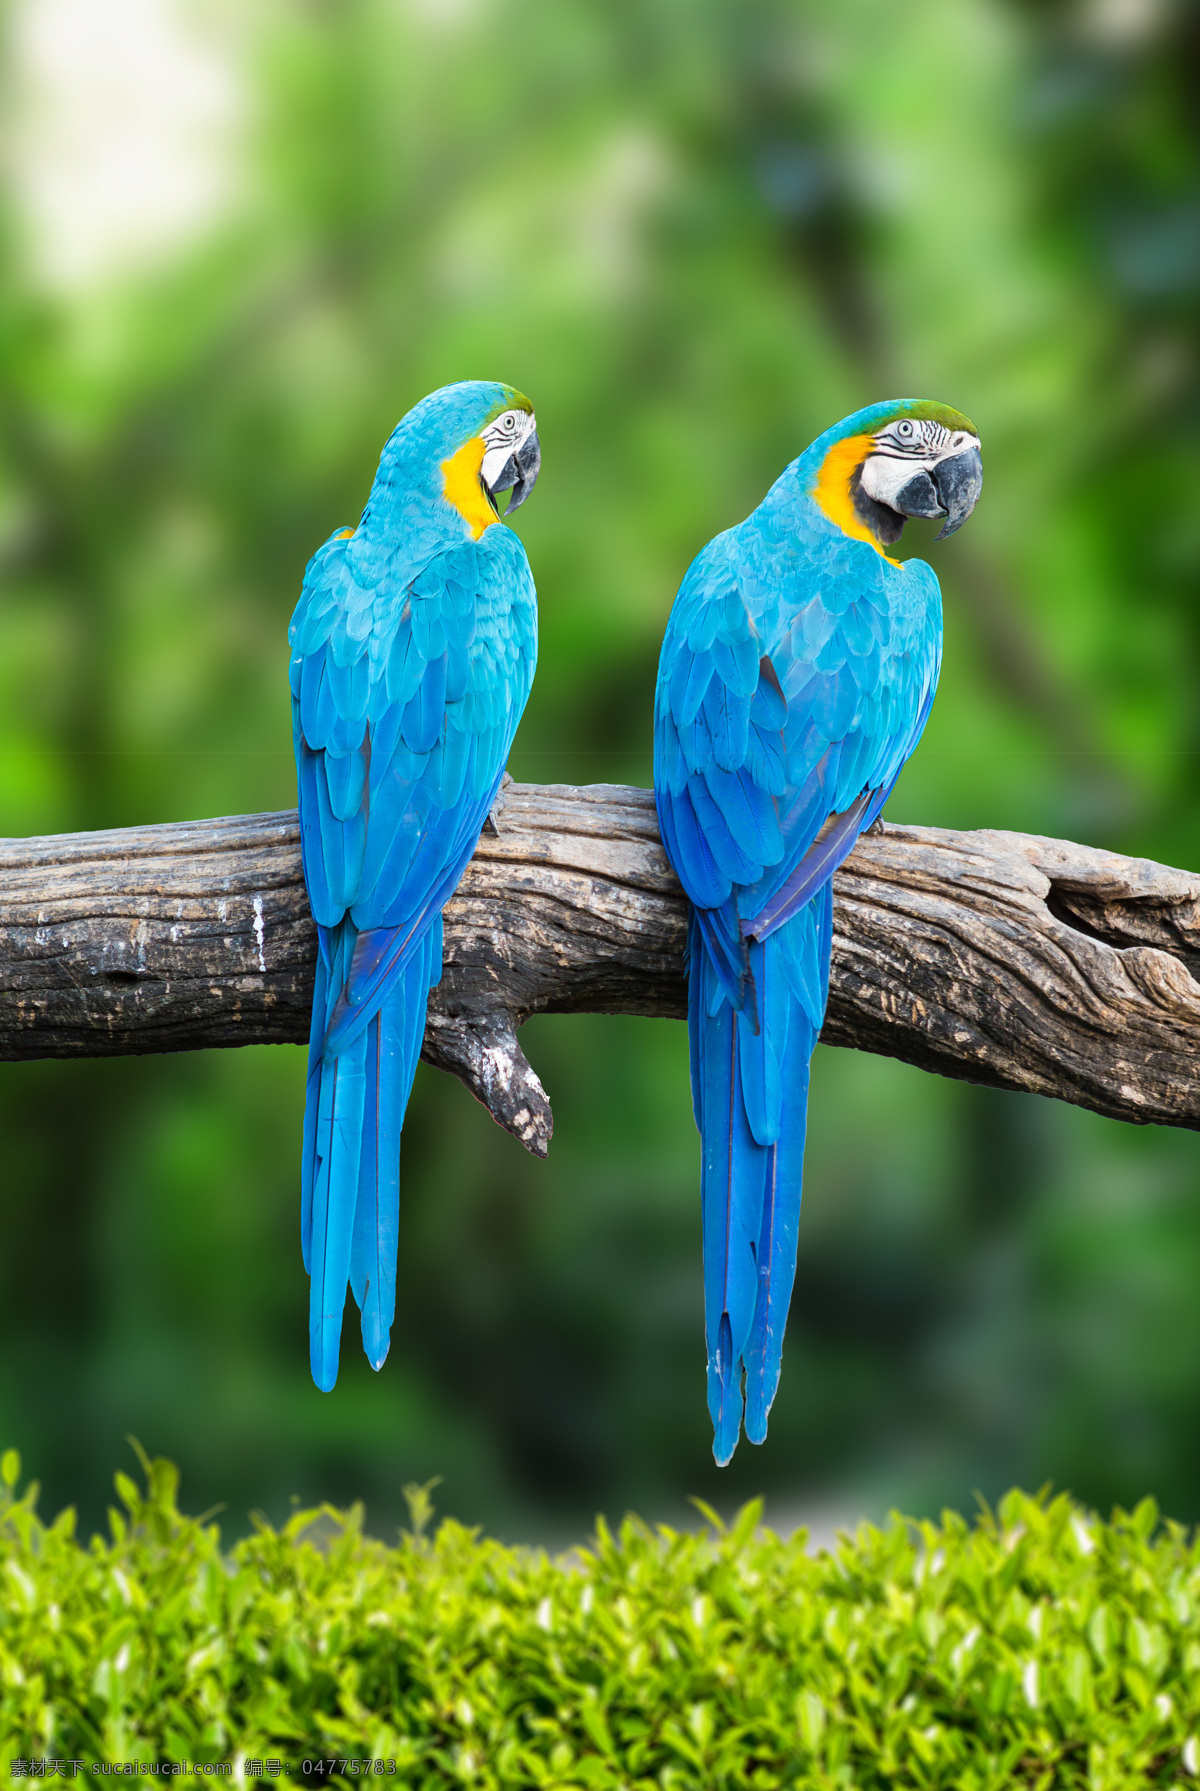 两 只 漂亮 蓝色 鹦鹉 鹦鹉摄影 漂亮的鹦鹉 蓝色鹦鹉 动物 野生动物 动物世界 动物园 空中飞鸟 生物世界 绿色